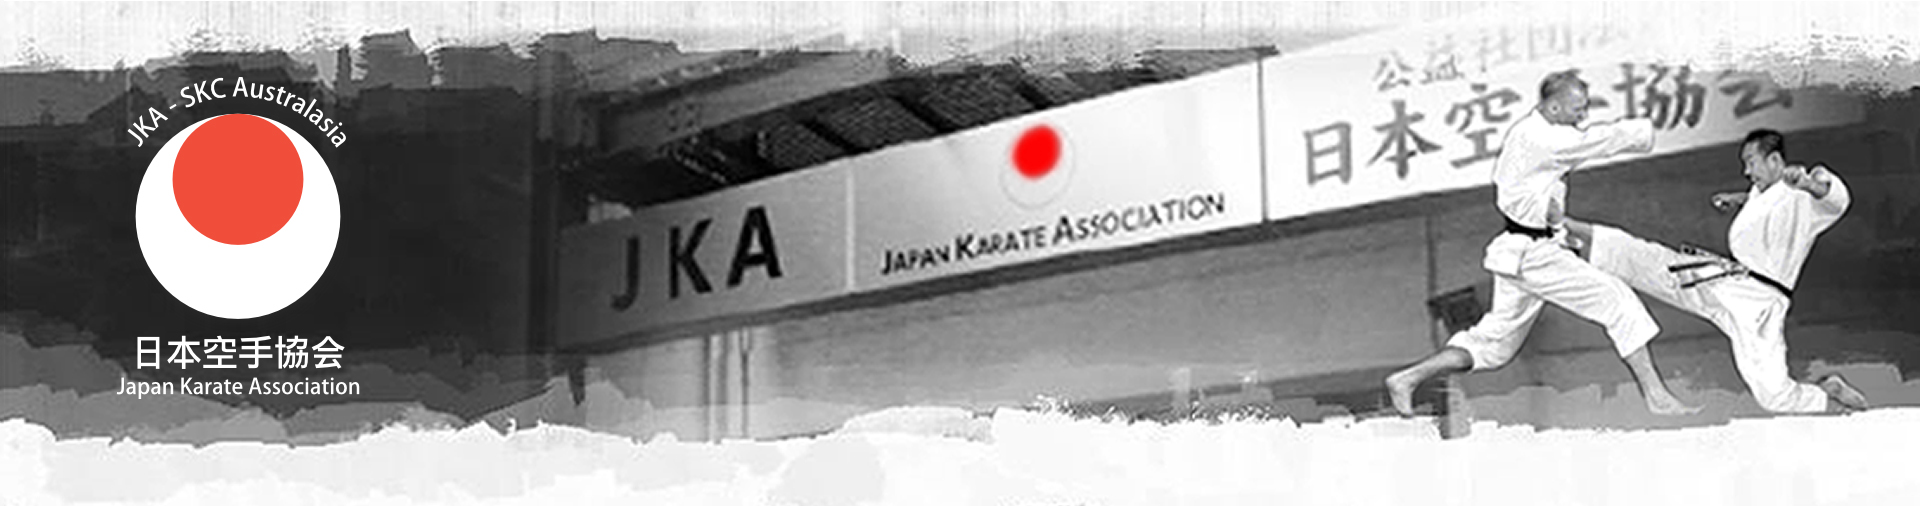 Japan Karate Association Melbourne - logo